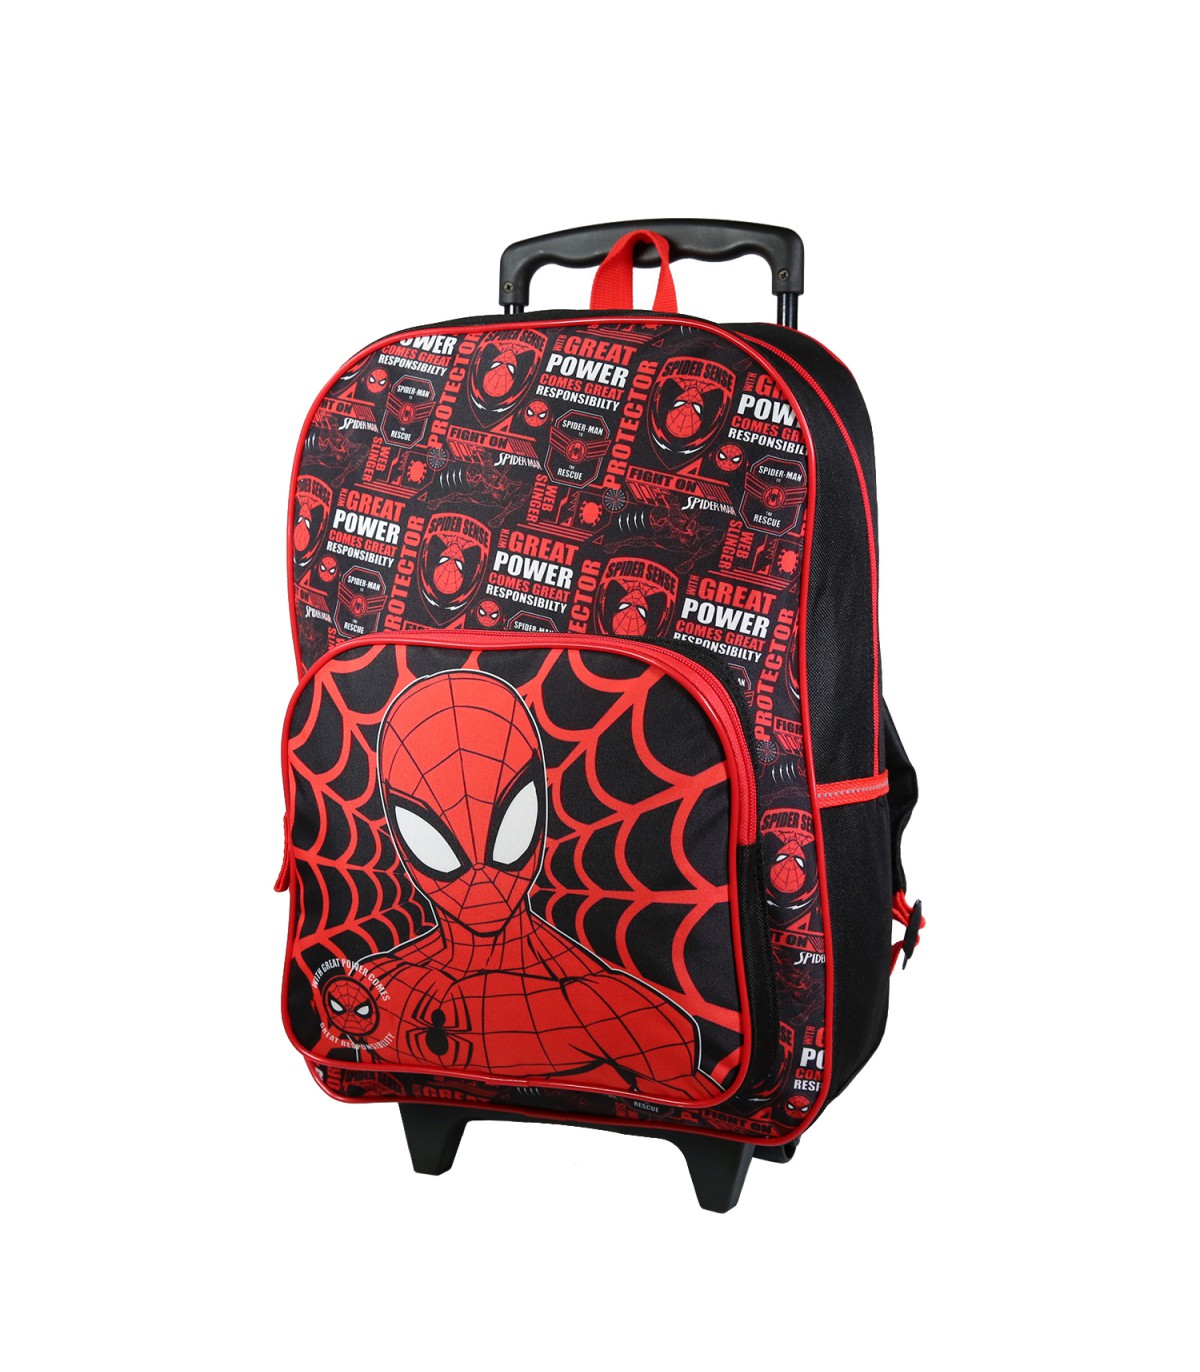 Marvel - Sac à dos - Enfants - Spiderman - Spider man - Sac à dos